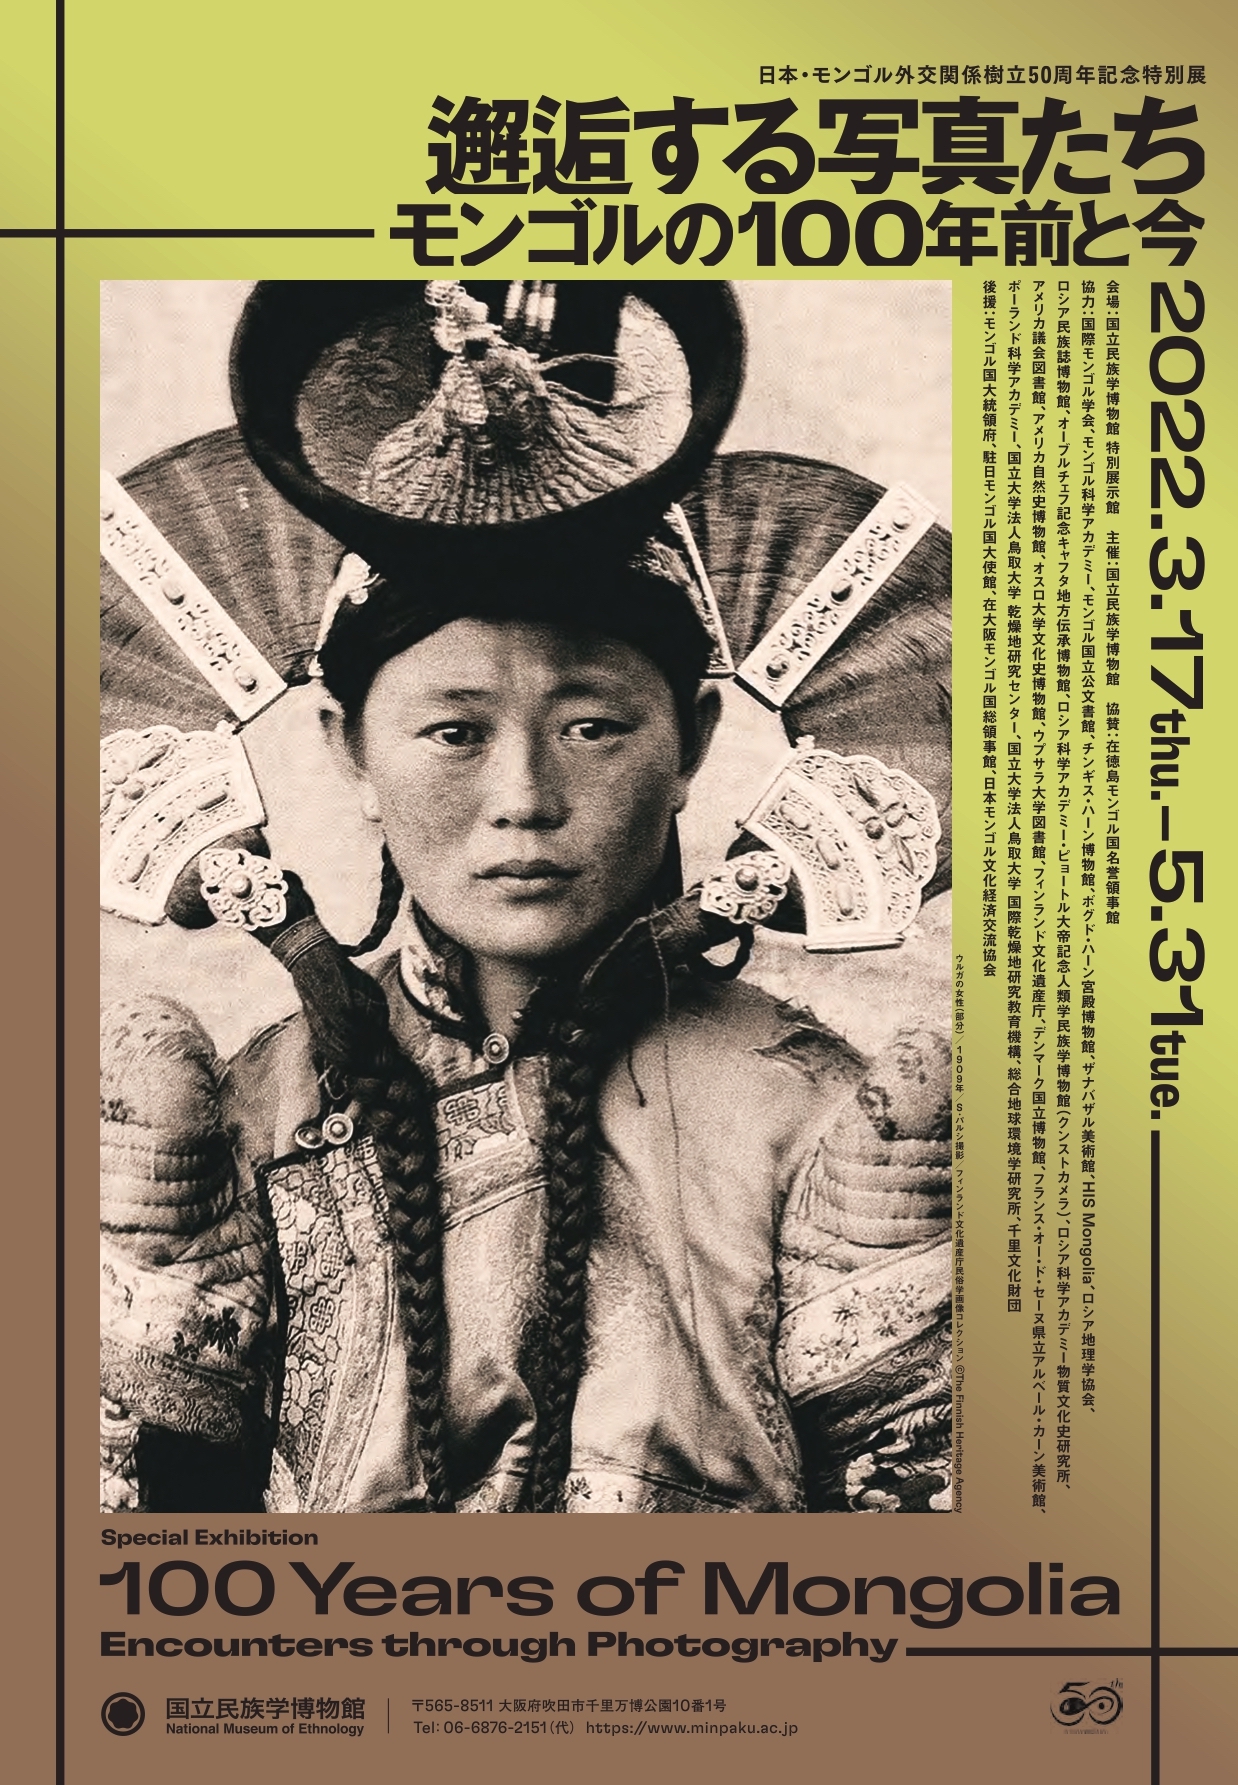 邂逅する写真たち――モンゴルの100年前と今」 （国立民族学博物館